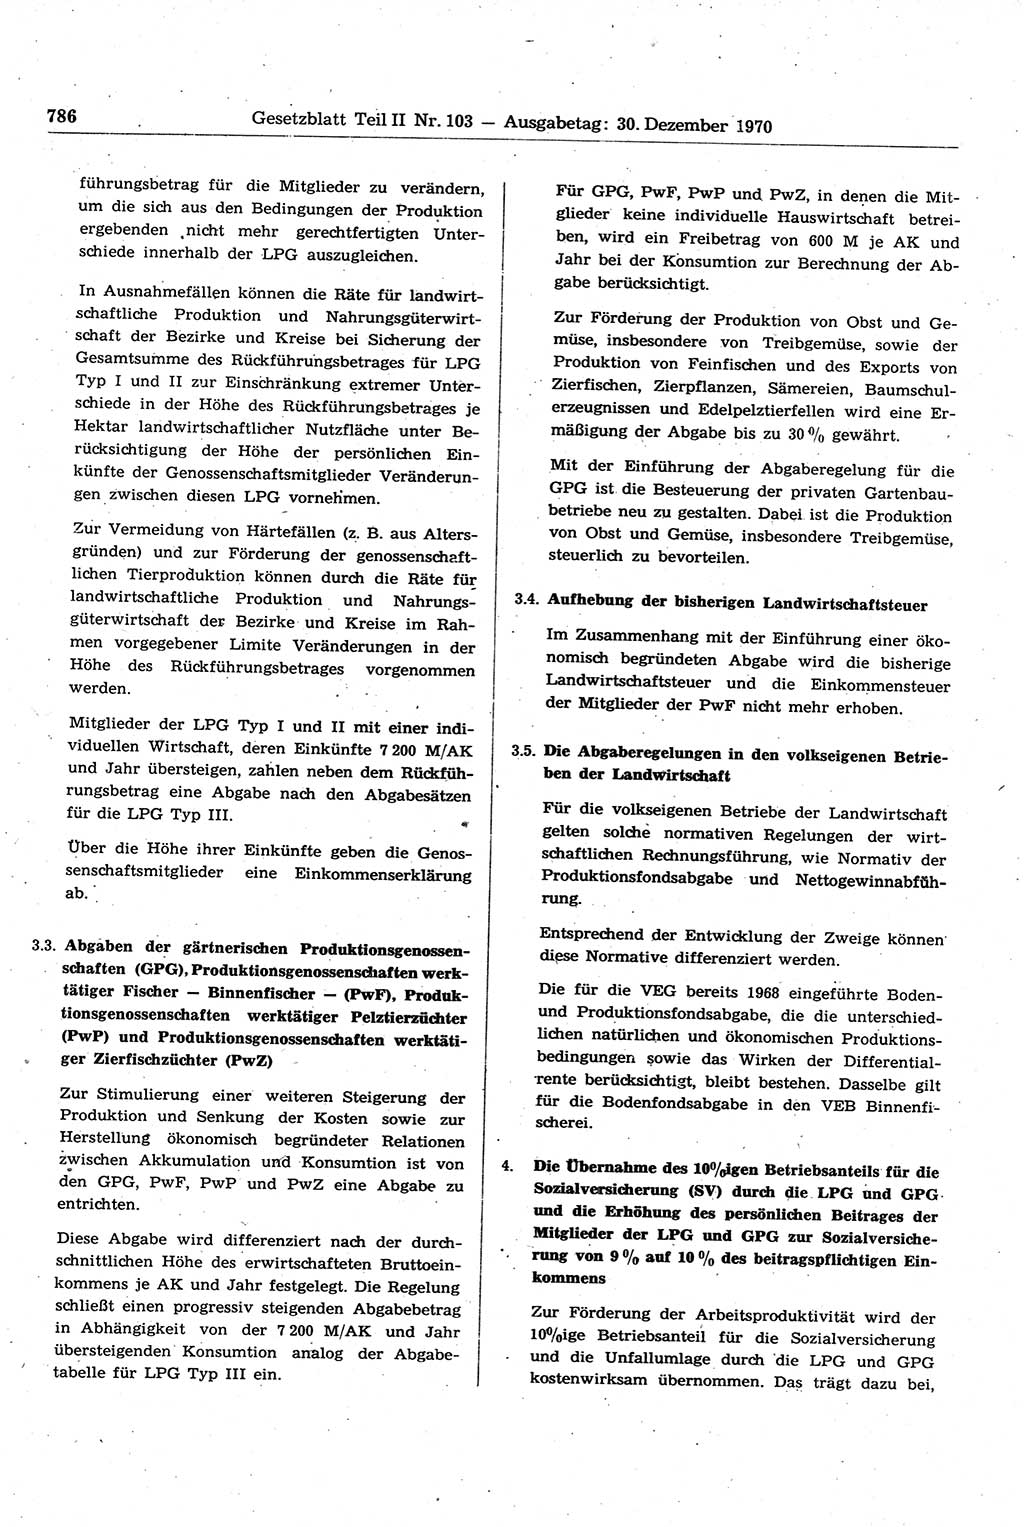 Gesetzblatt (GBl.) der Deutschen Demokratischen Republik (DDR) Teil ⅠⅠ 1970, Seite 786 (GBl. DDR ⅠⅠ 1970, S. 786)